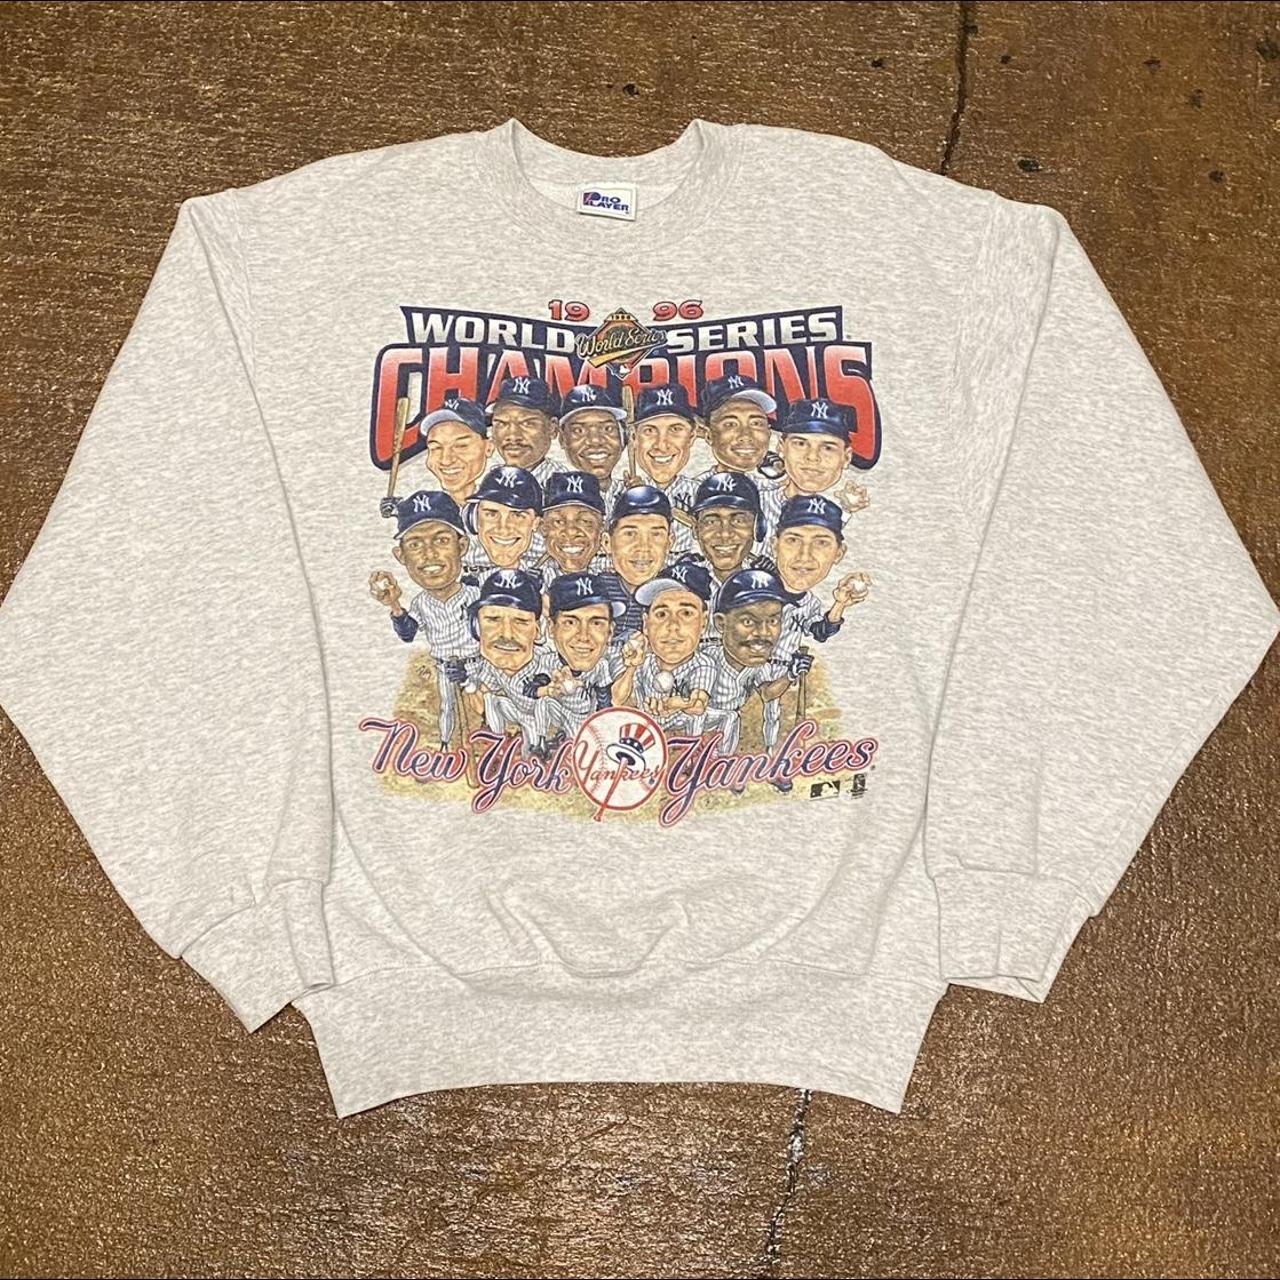 World series champs new york yankees 1996 t-shirt, hoodie